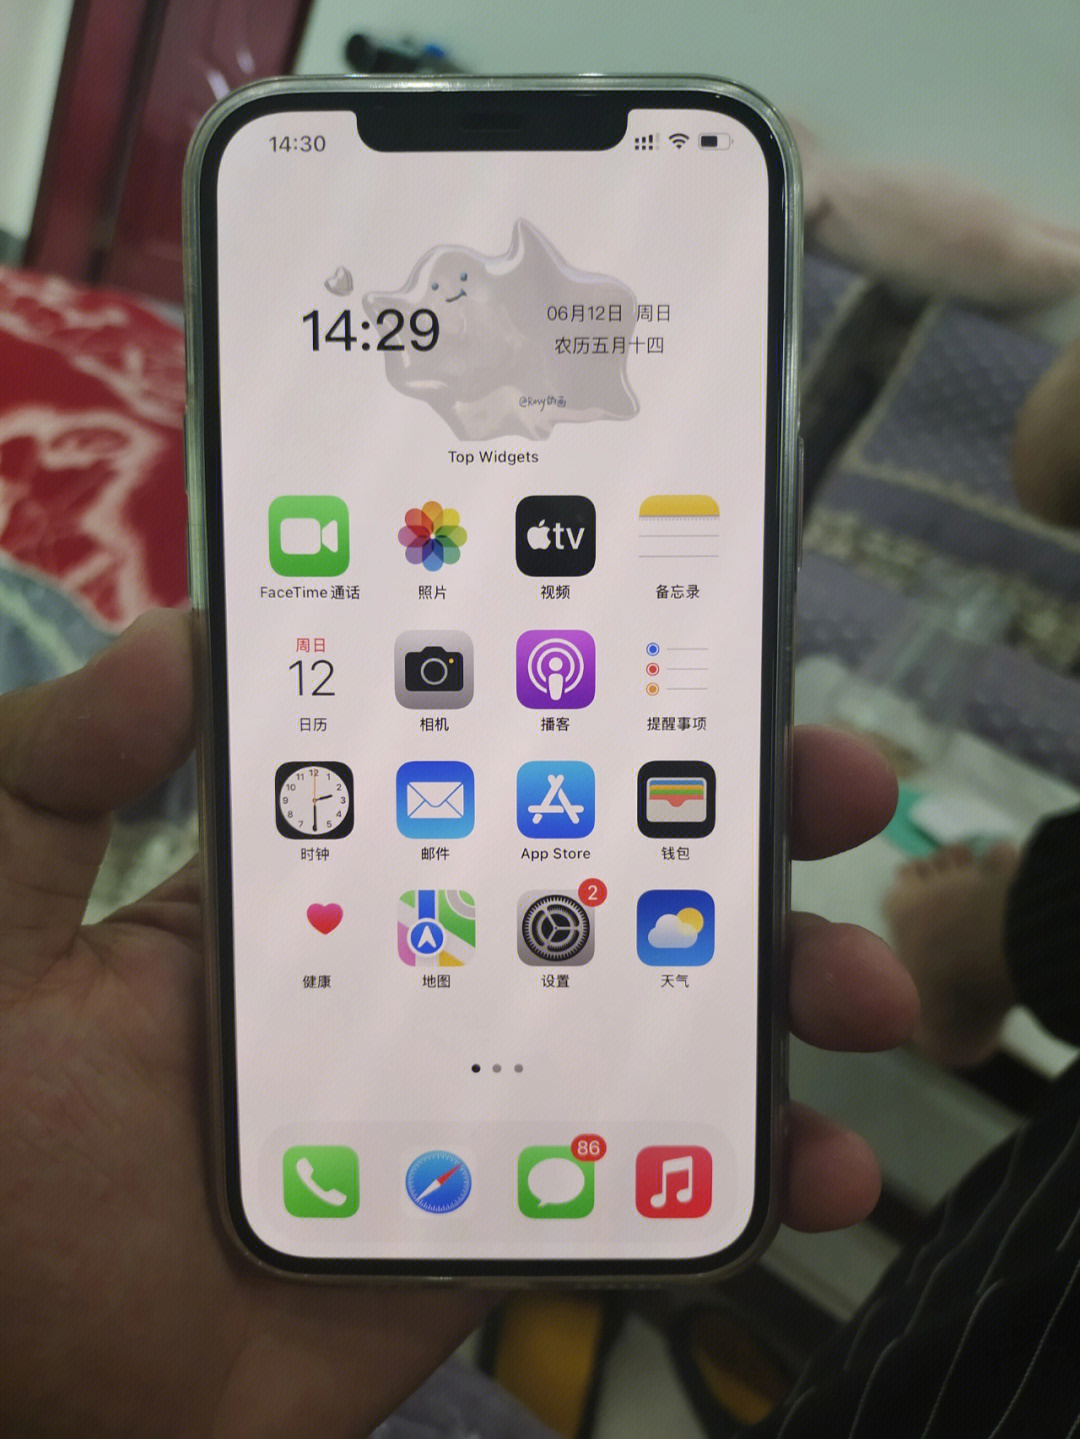 iphone12前屏提示灯图片